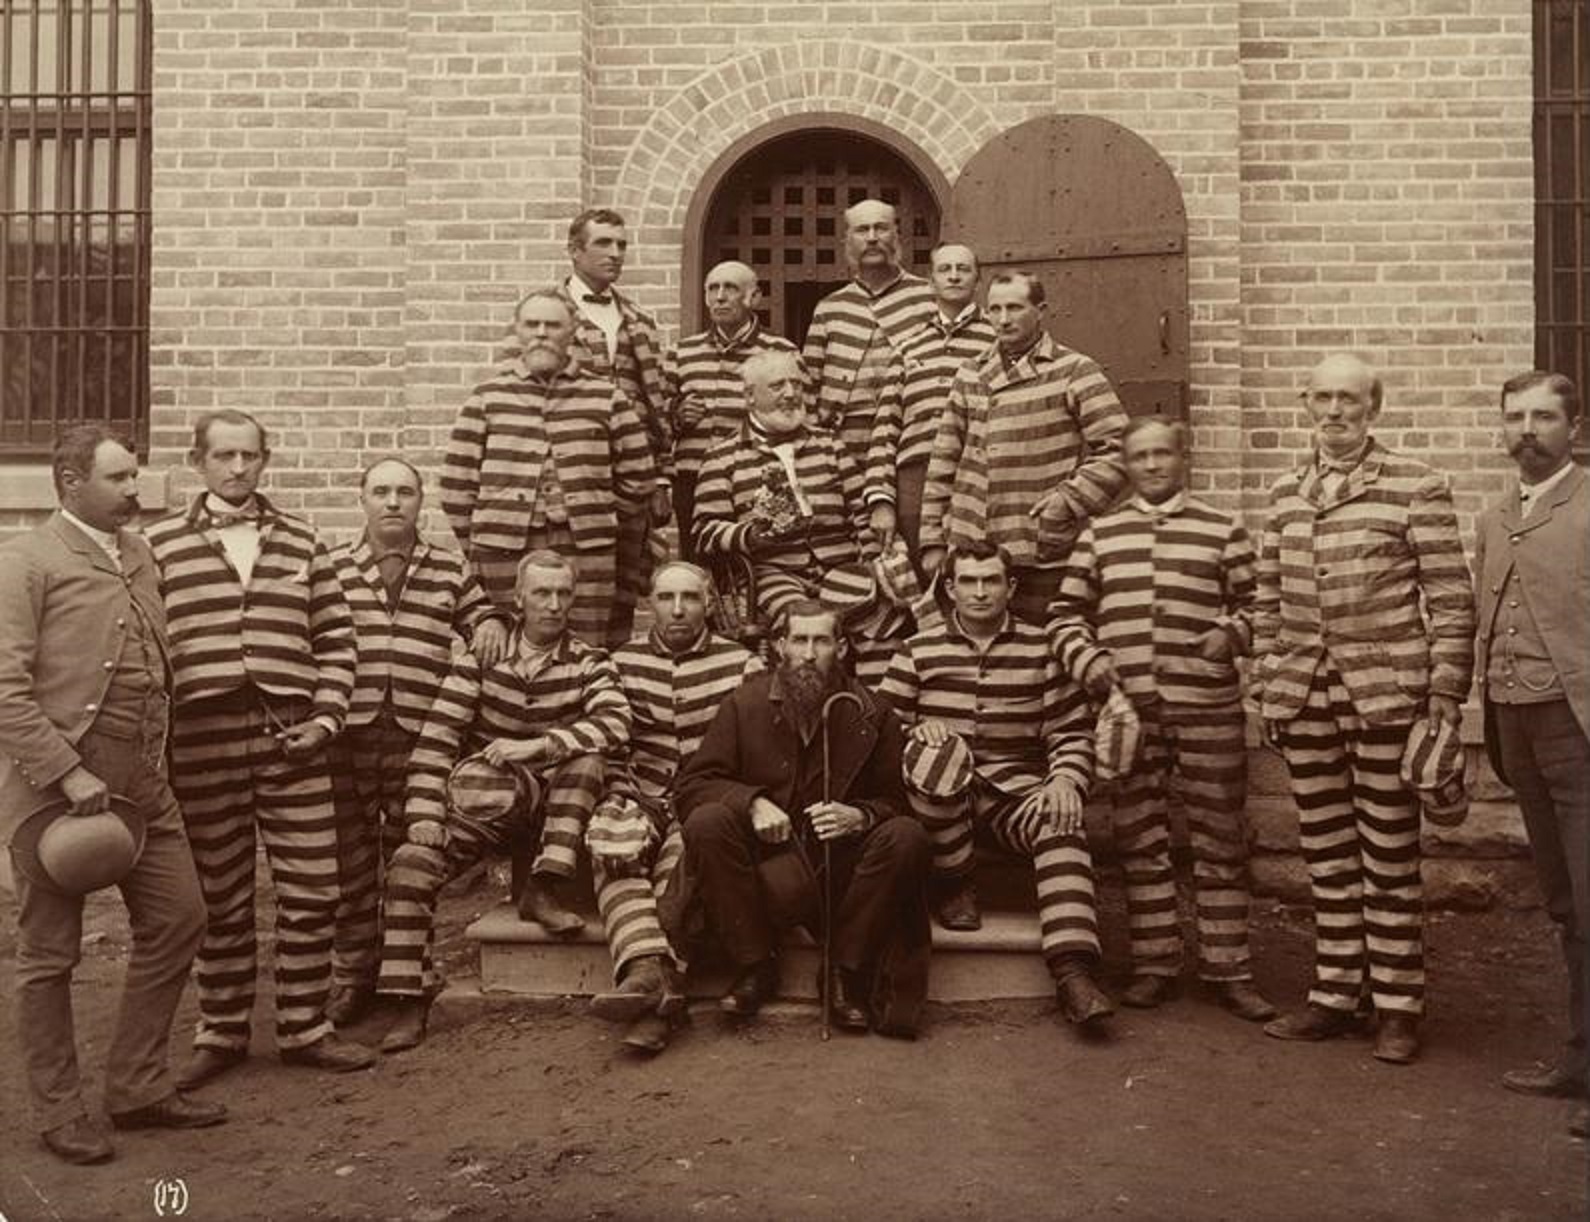 Polygamist prisoners at the Utah Territorial Penitentiary